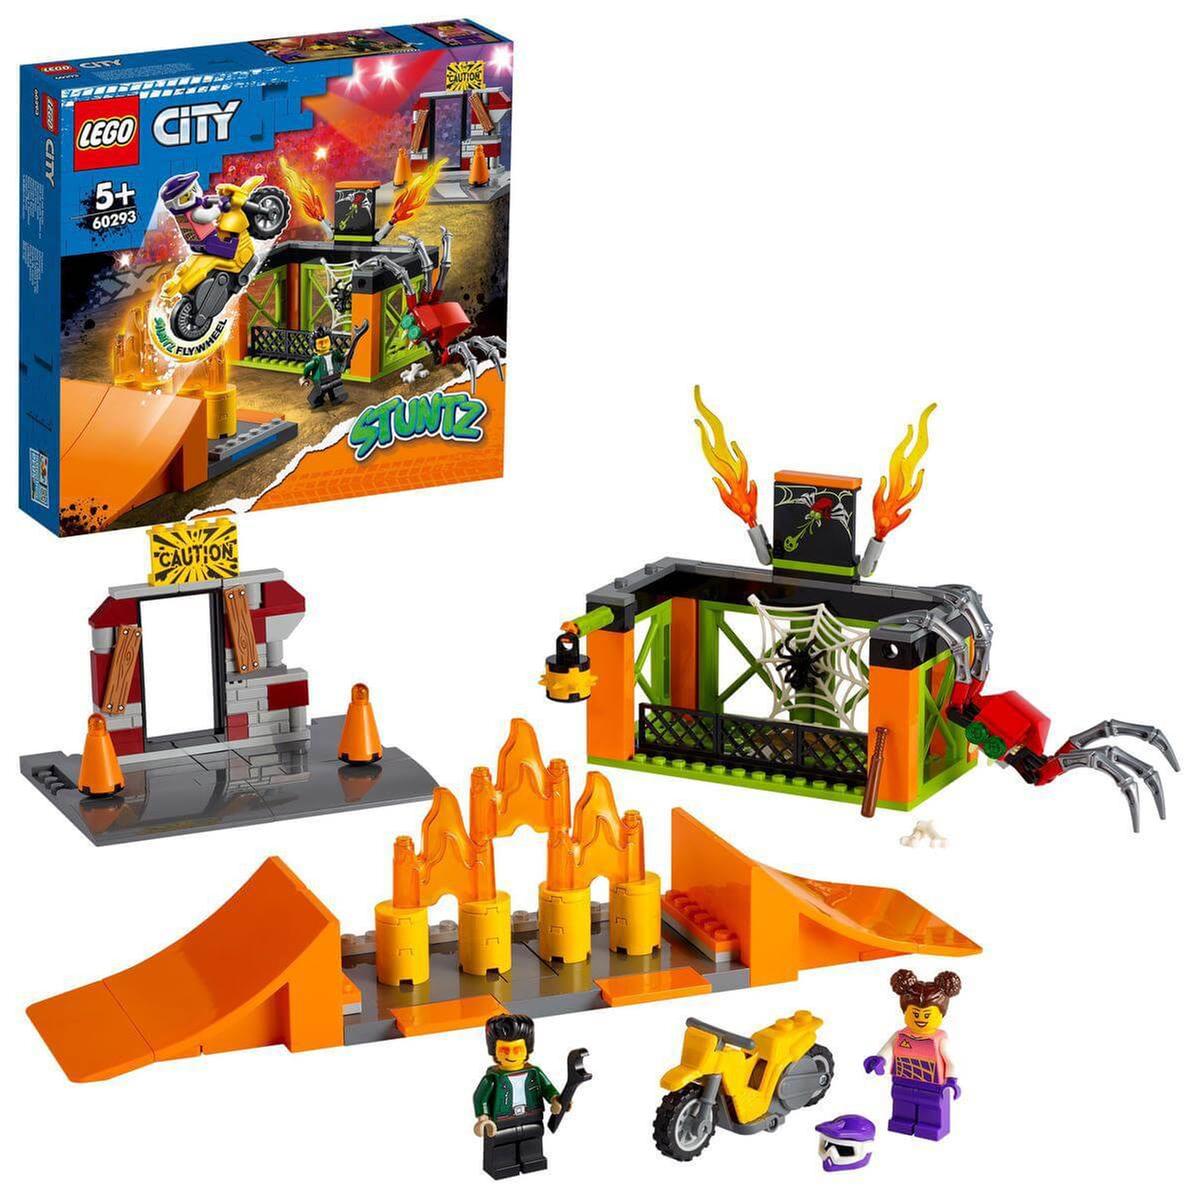 LEGO City - Parque acrobático - 60293 | Lego City | Toys"R"Us España